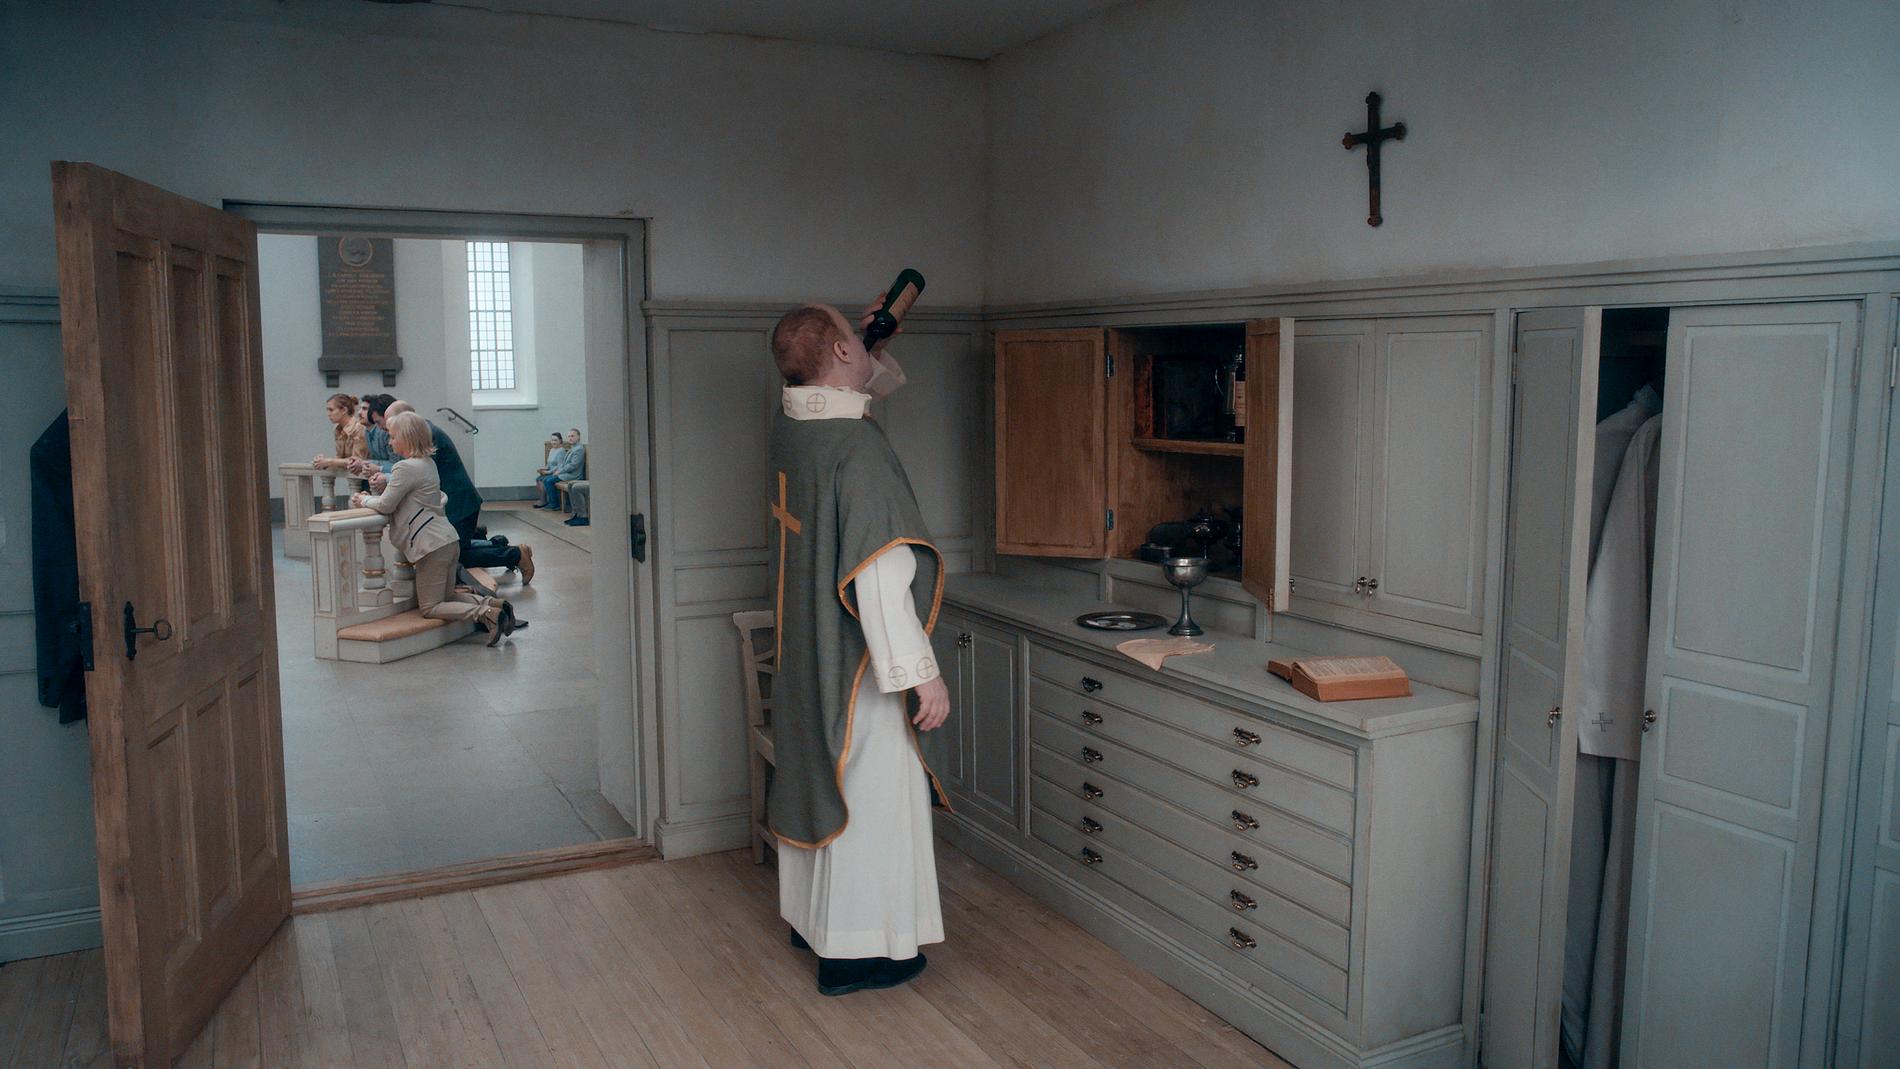 En präst, som häller i sig nattvardsvinet för att dränka ångesten efter att ha förlorat sin tro, avbildas på en av Anderssons bilder. Pressbild.